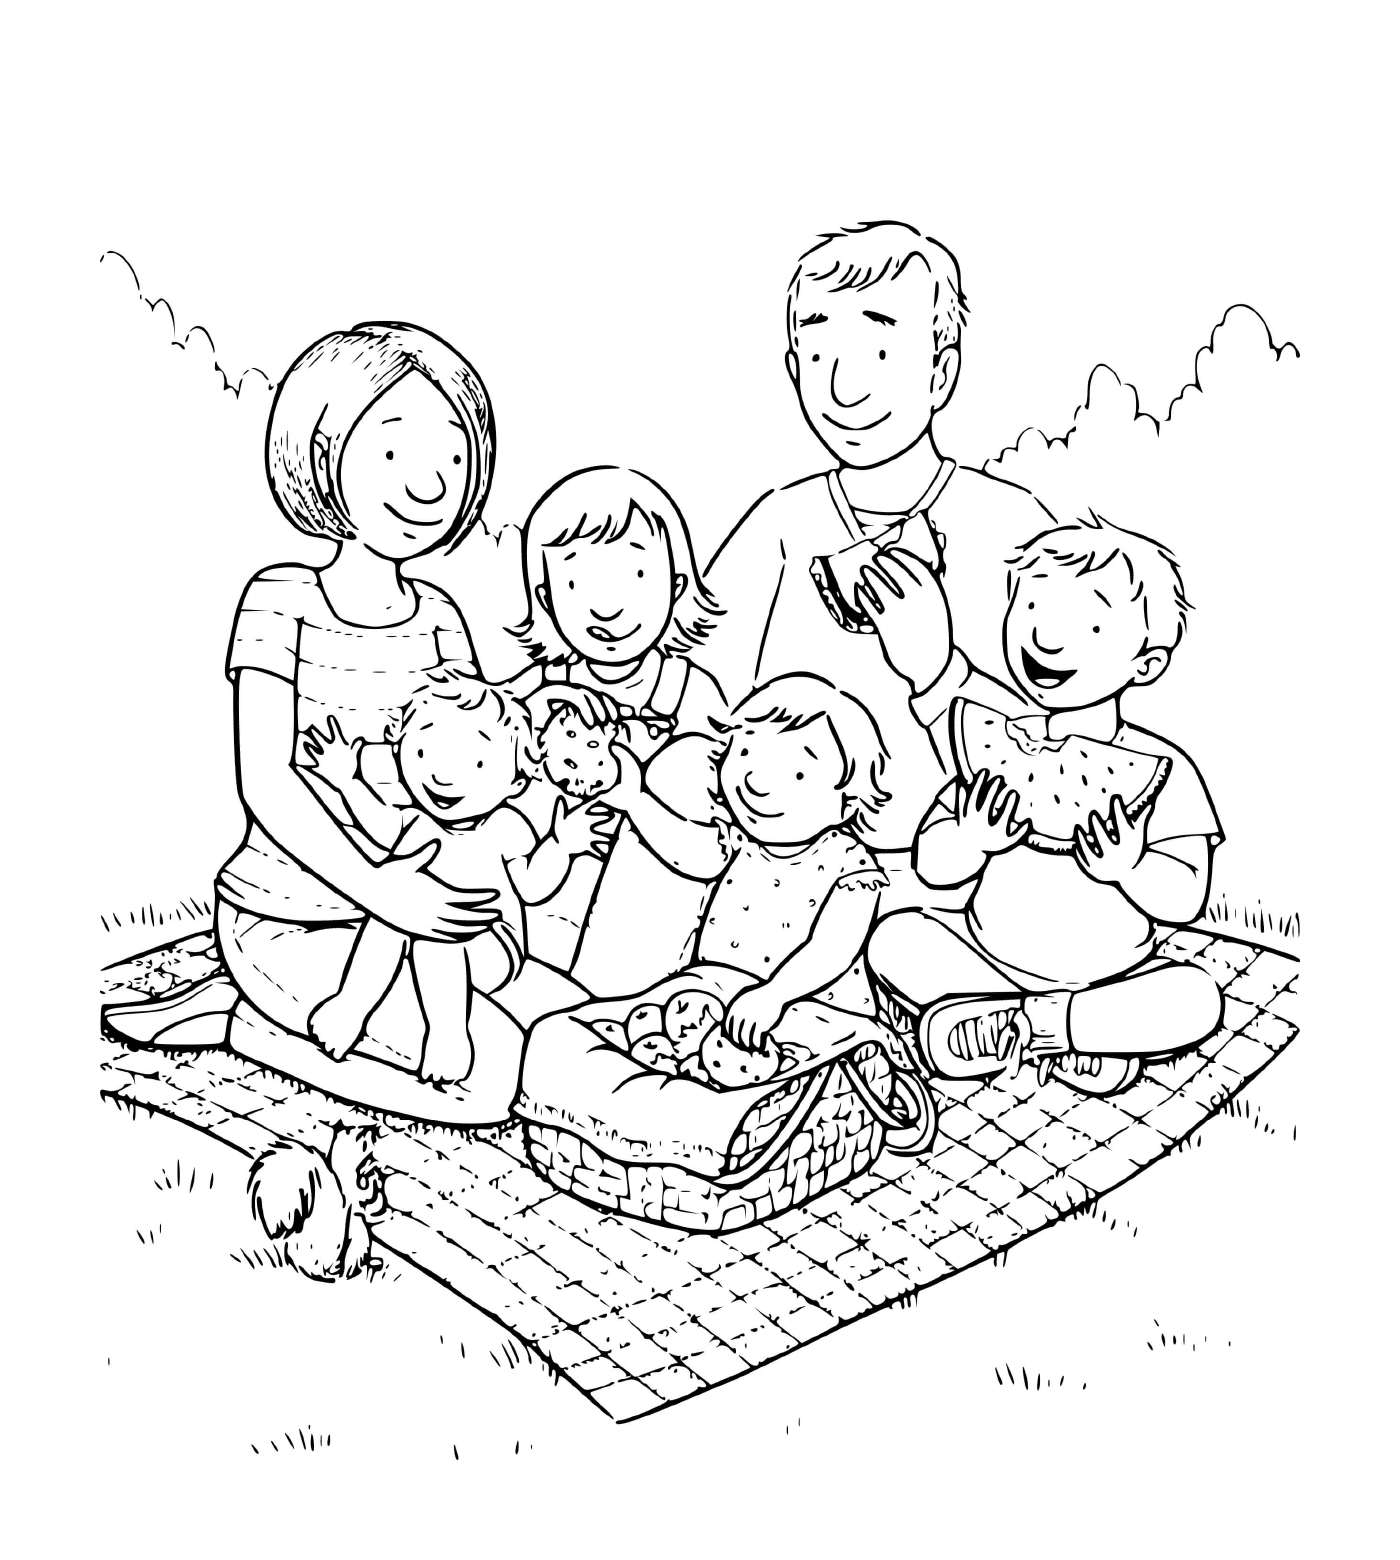  عائلة مؤلفة من أربعة أطفال يأخذون نزهة على بطانه في العشب 